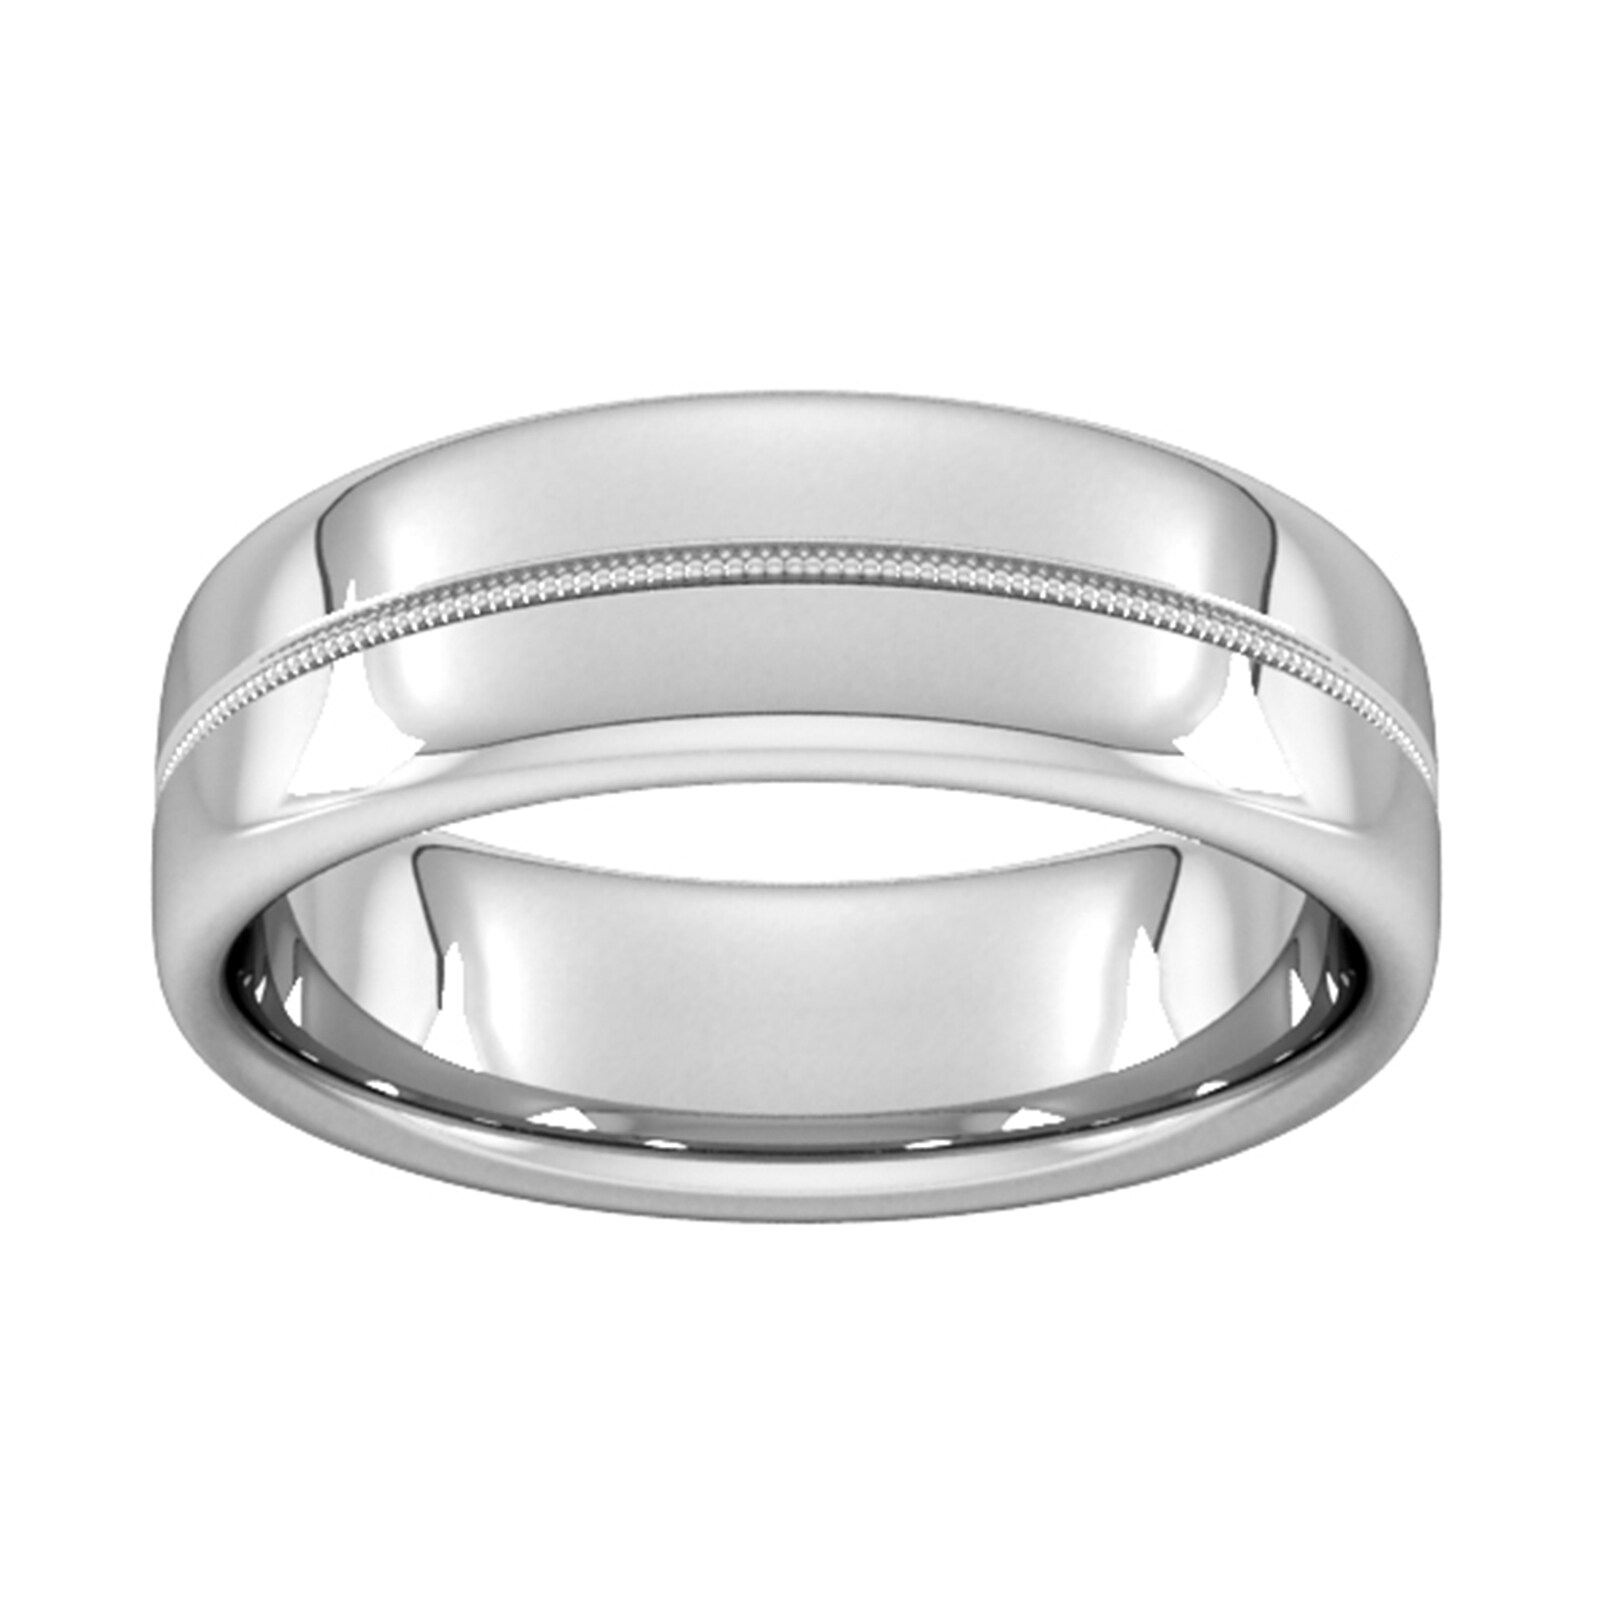 7mm Slight Court Standard Milgrain Centre Wedding Ring In 18 Carat White Gold - Ring Size S